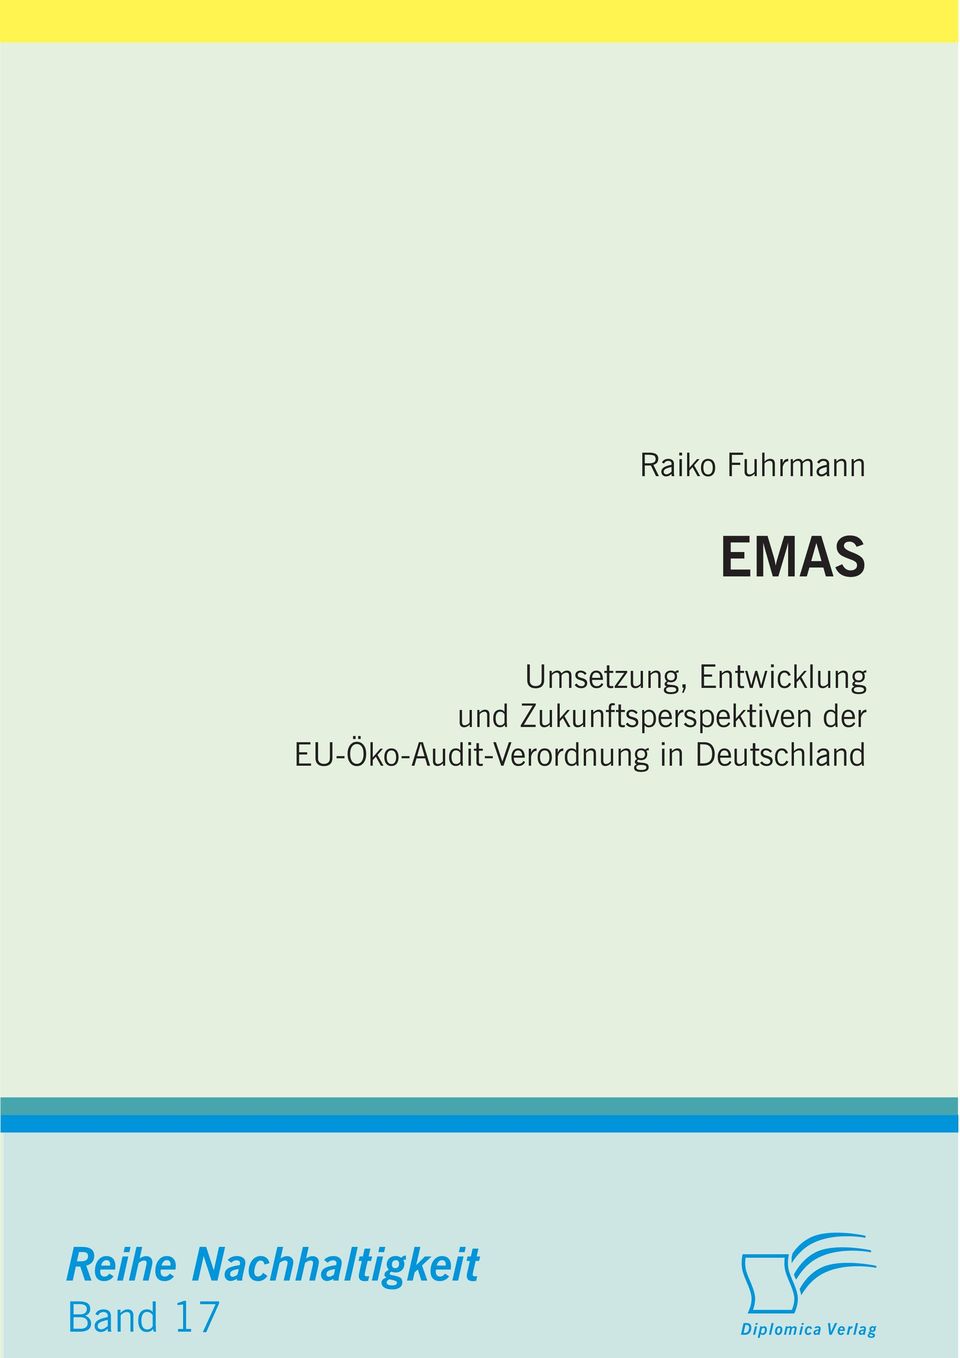 der EU-Öko-Audit-Verordnung in